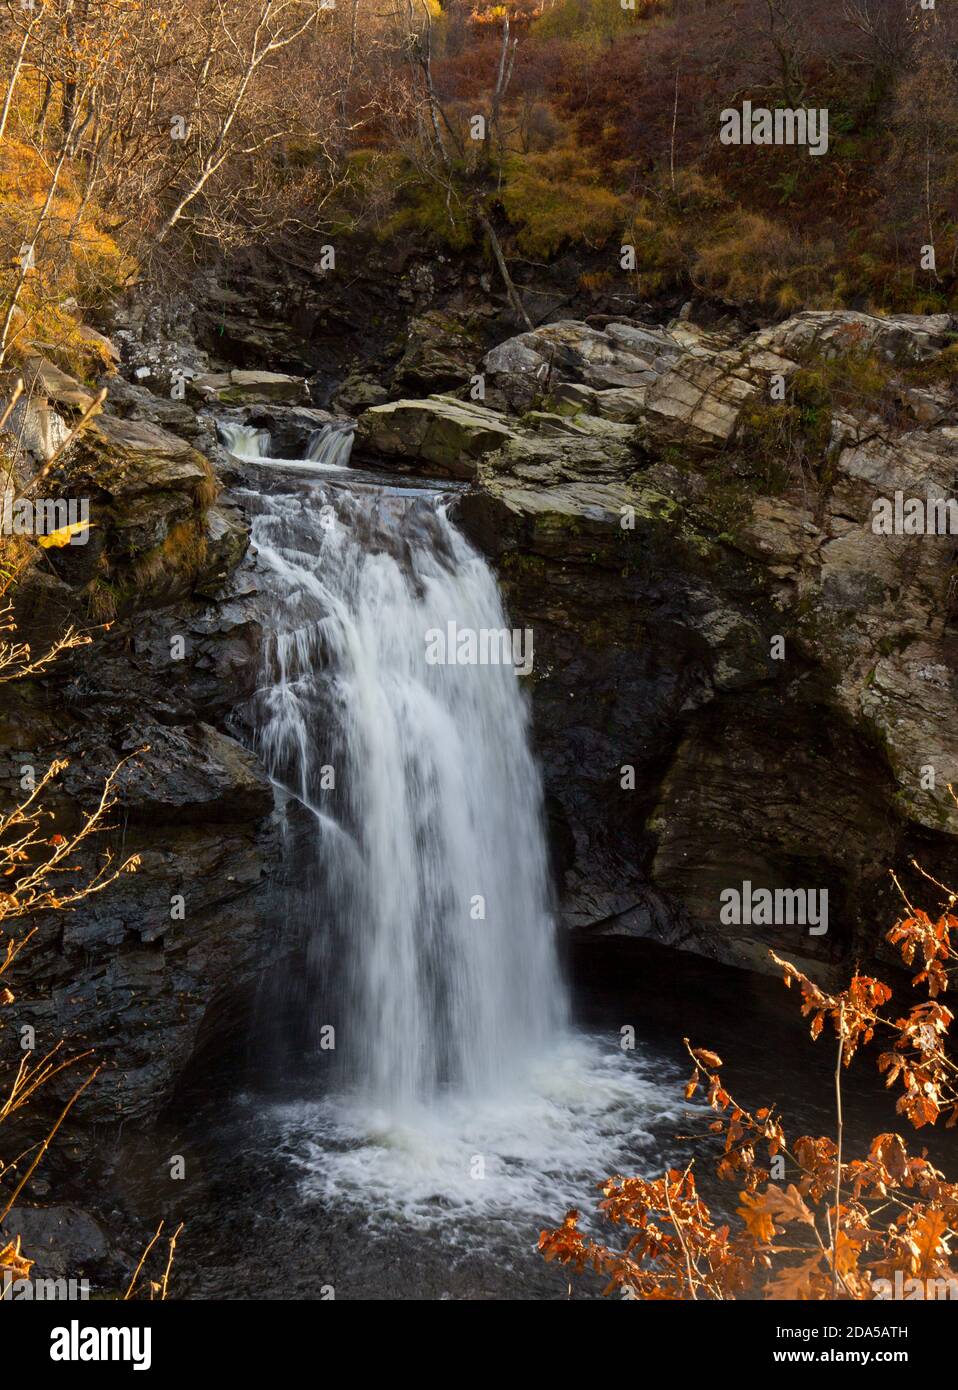 Les chutes de Falloch, West Highland Way, près de Crianlarich, Écosse Banque D'Images